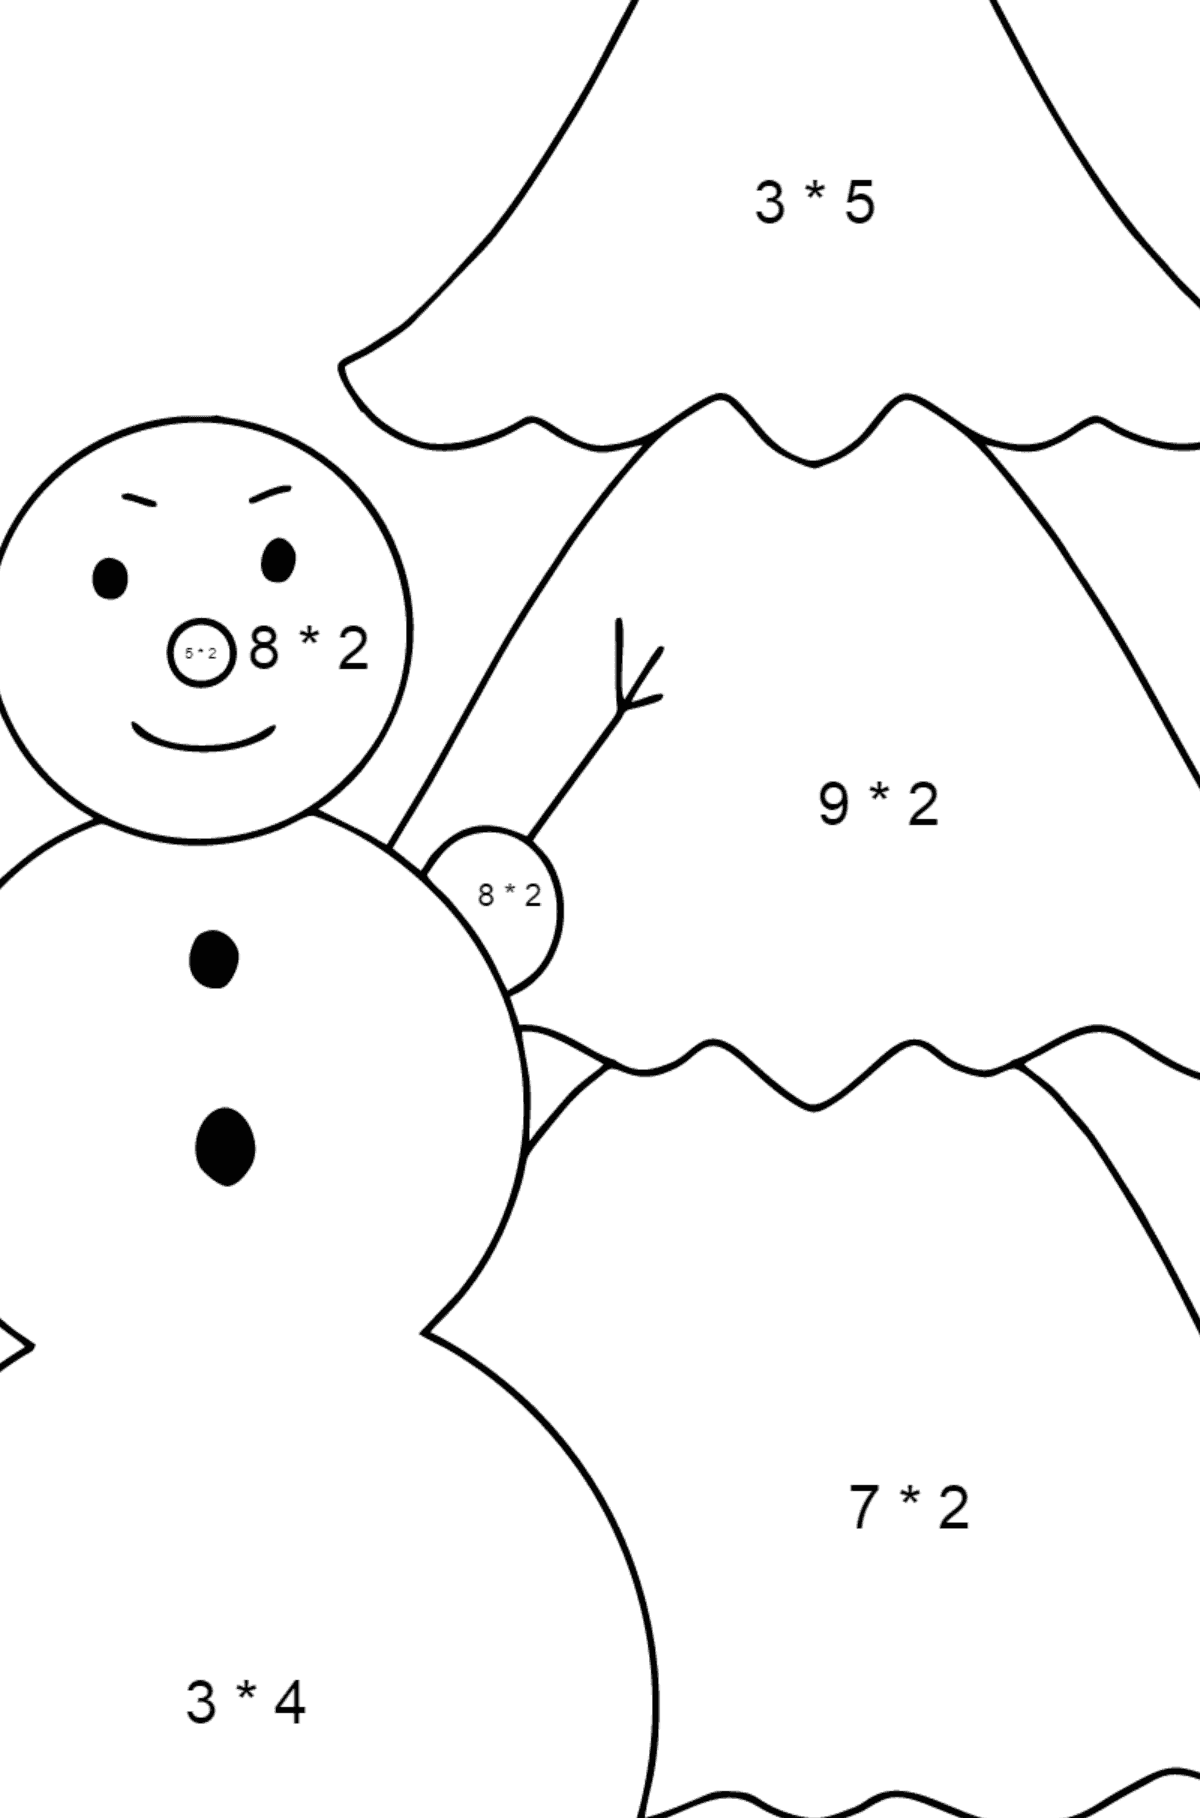 Omalovánka sněhulák a strom - Matematická Omalovánka - Násobení pro děti